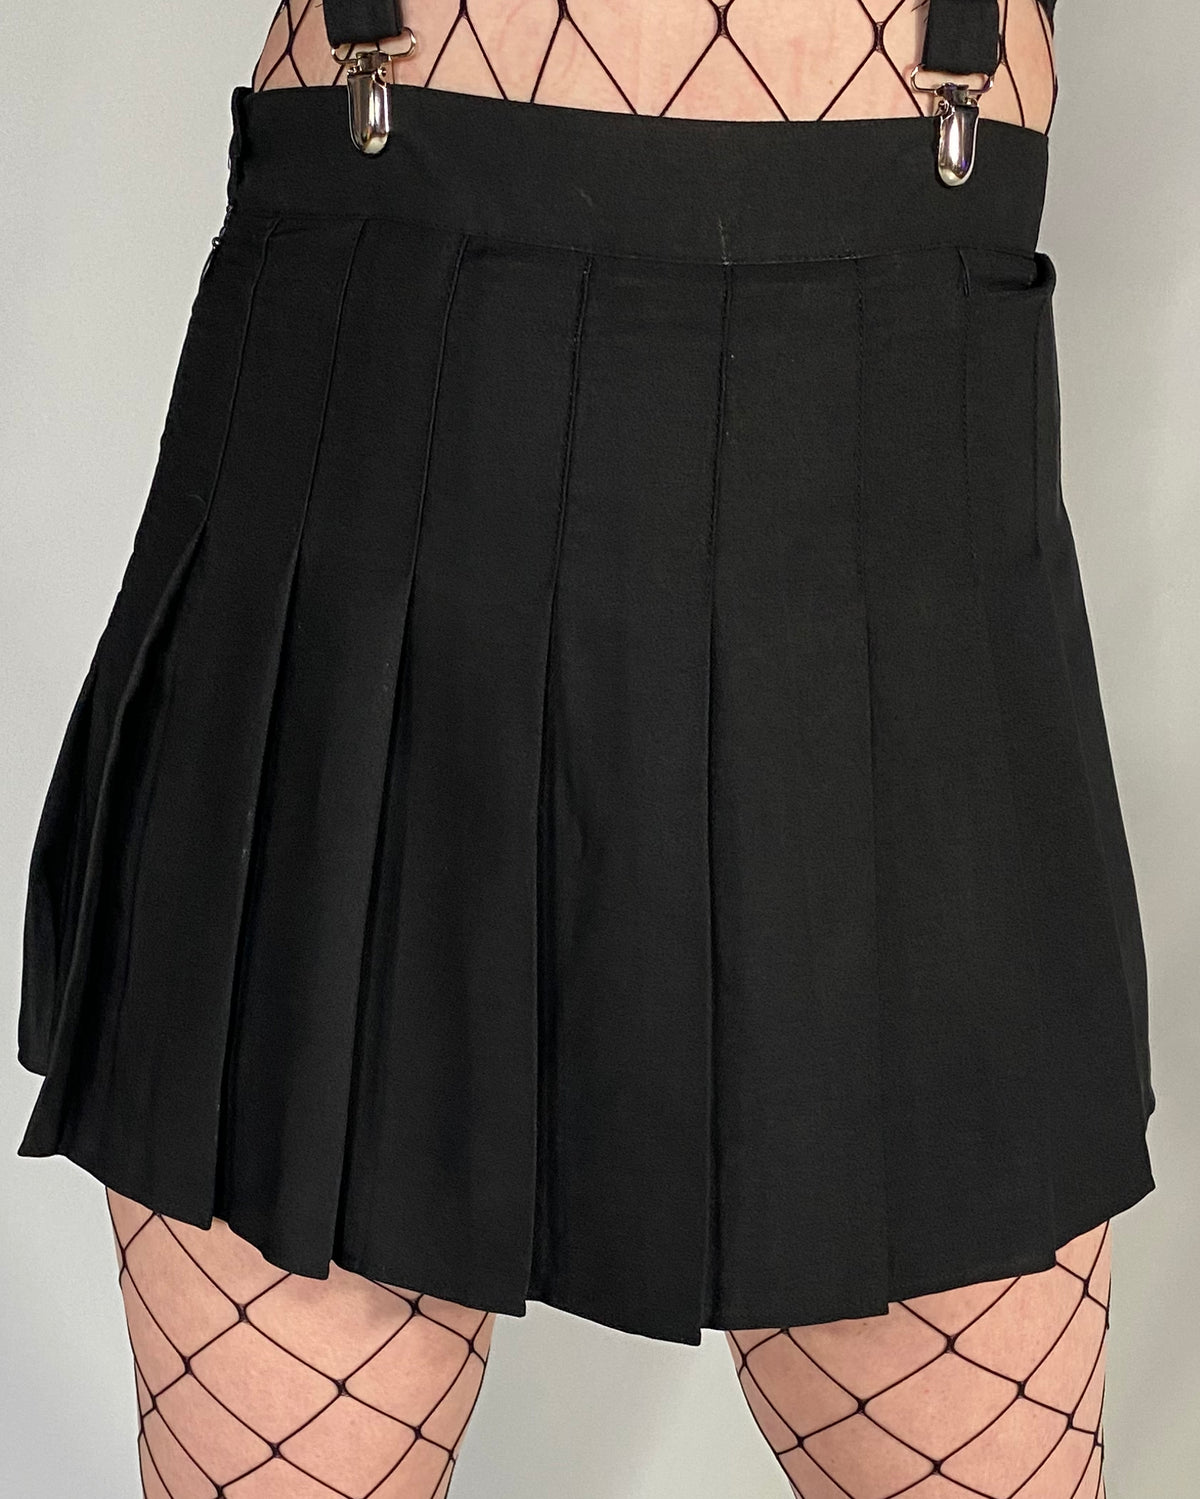 Basic Black Pleated Skirt - Rave Wonderland